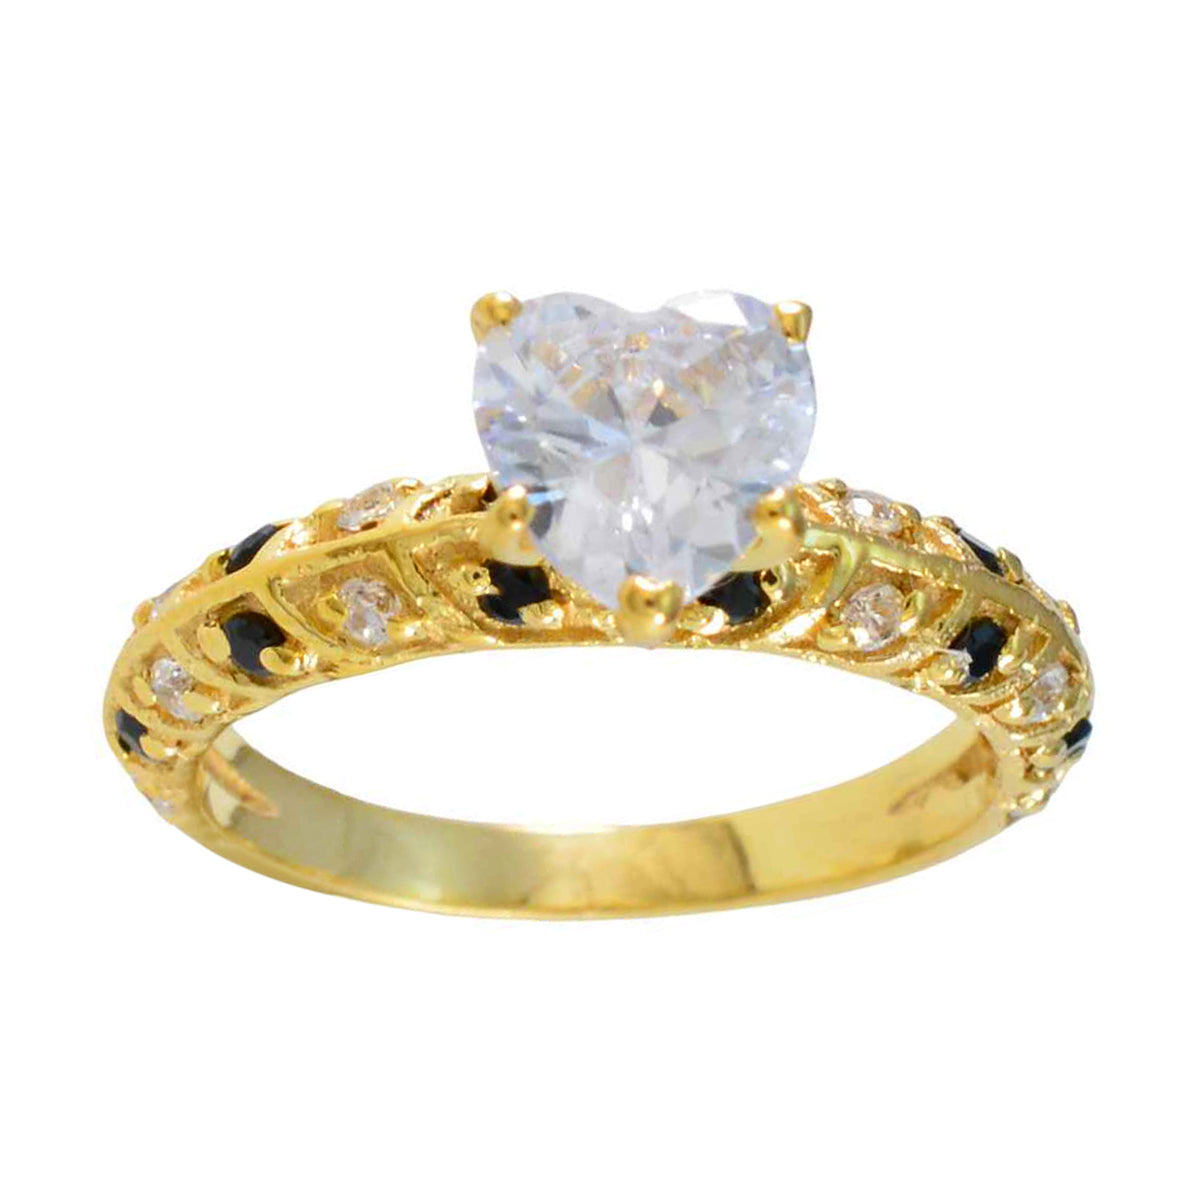 Riyo Vintage Zilveren Ring Met Geel Goud Plating Blauwe Saffier Steen Hartvorm Prong Setting Mode-sieraden Nieuwjaar Ring